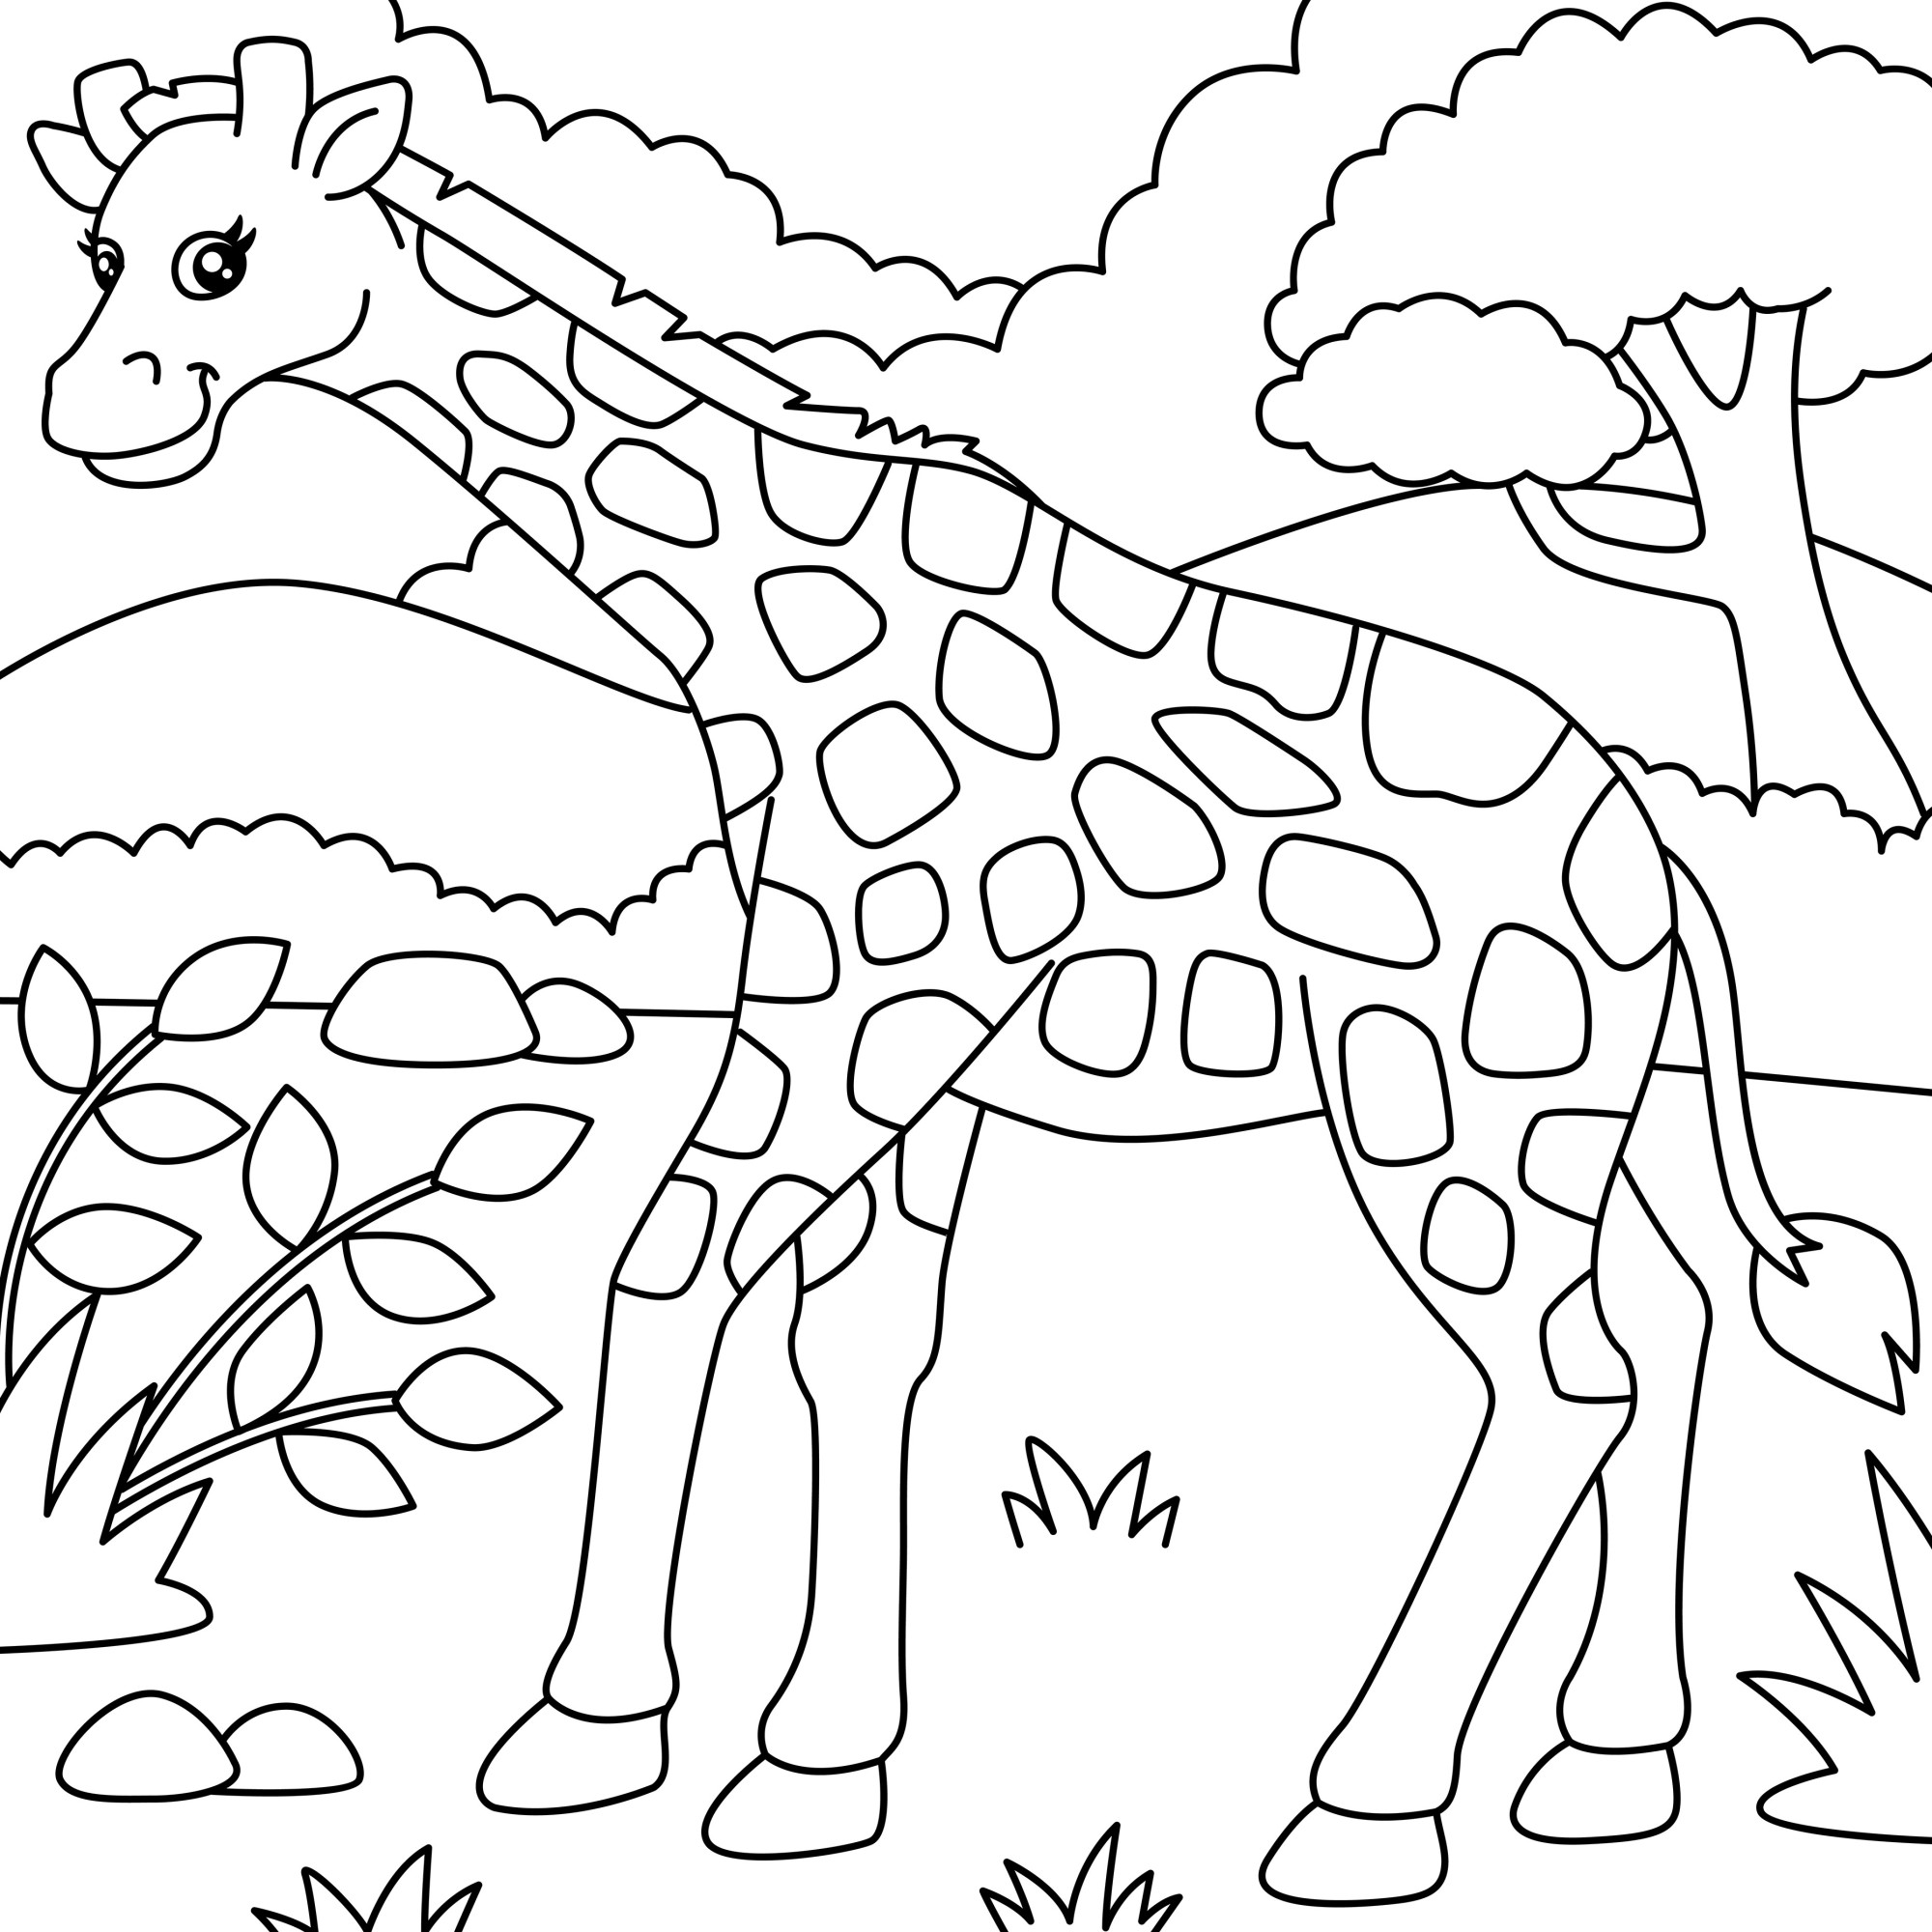 Раскраска для детей: жираф на лугу на фоне леса